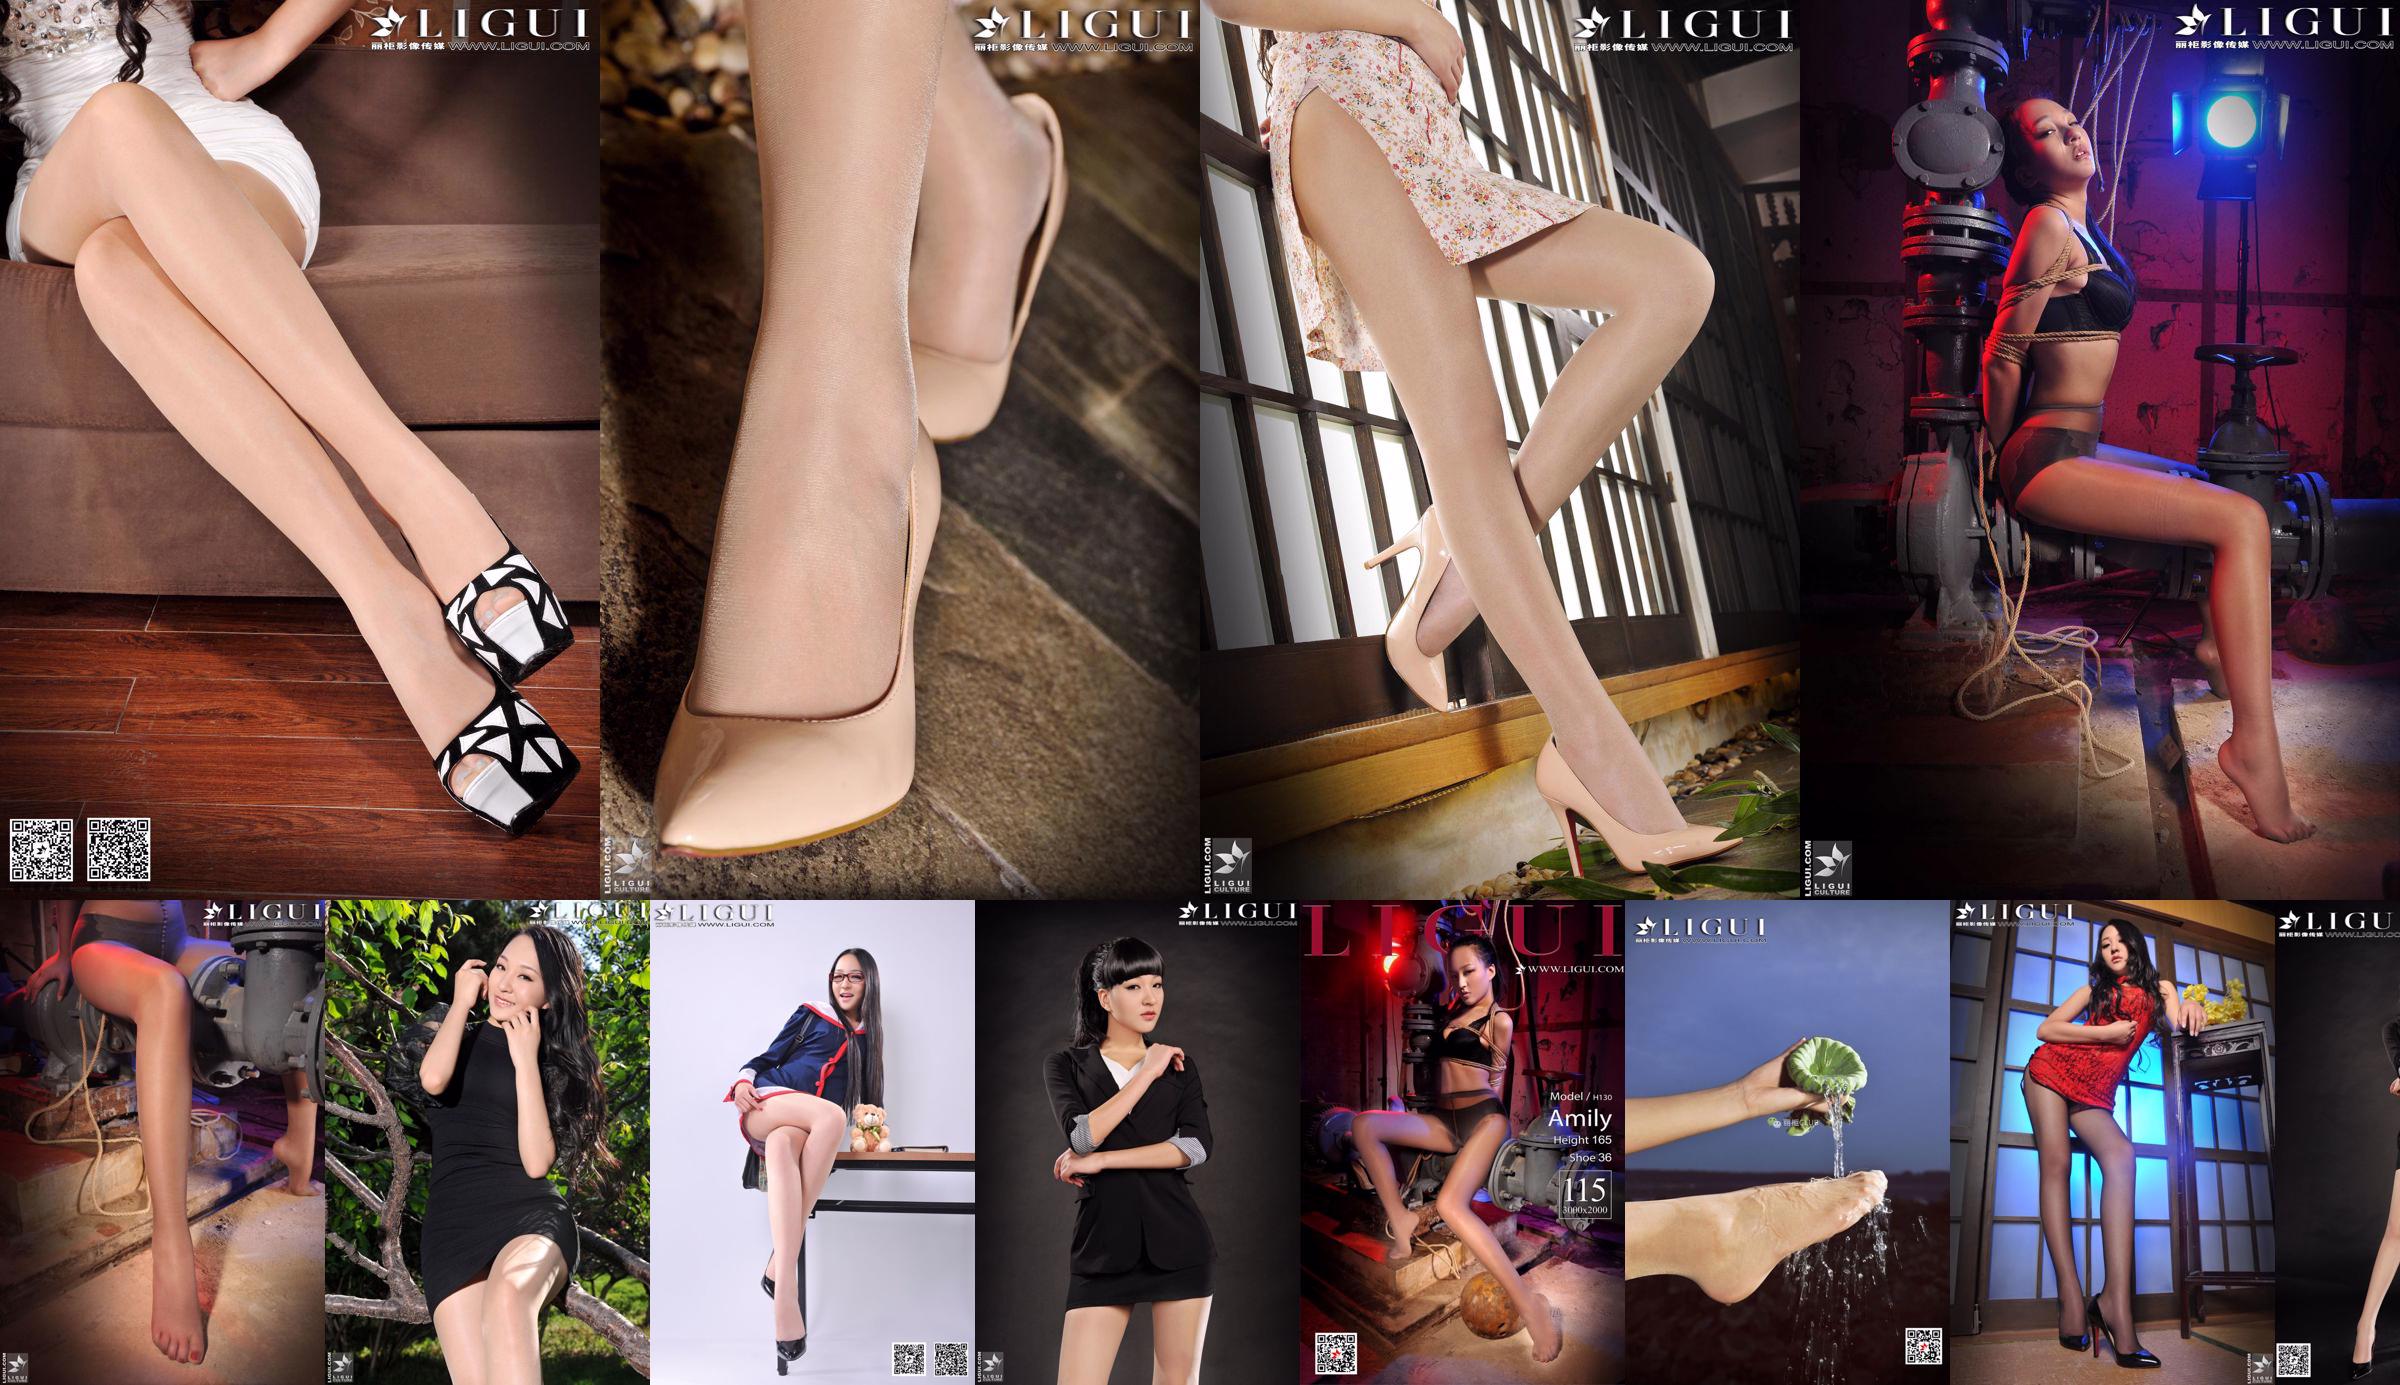 [丽 柜 贵 piede LiGui] Modello Amily "OL Professional Wear High Heel Foot" Collezione completa No.5e37bf Pagina 1